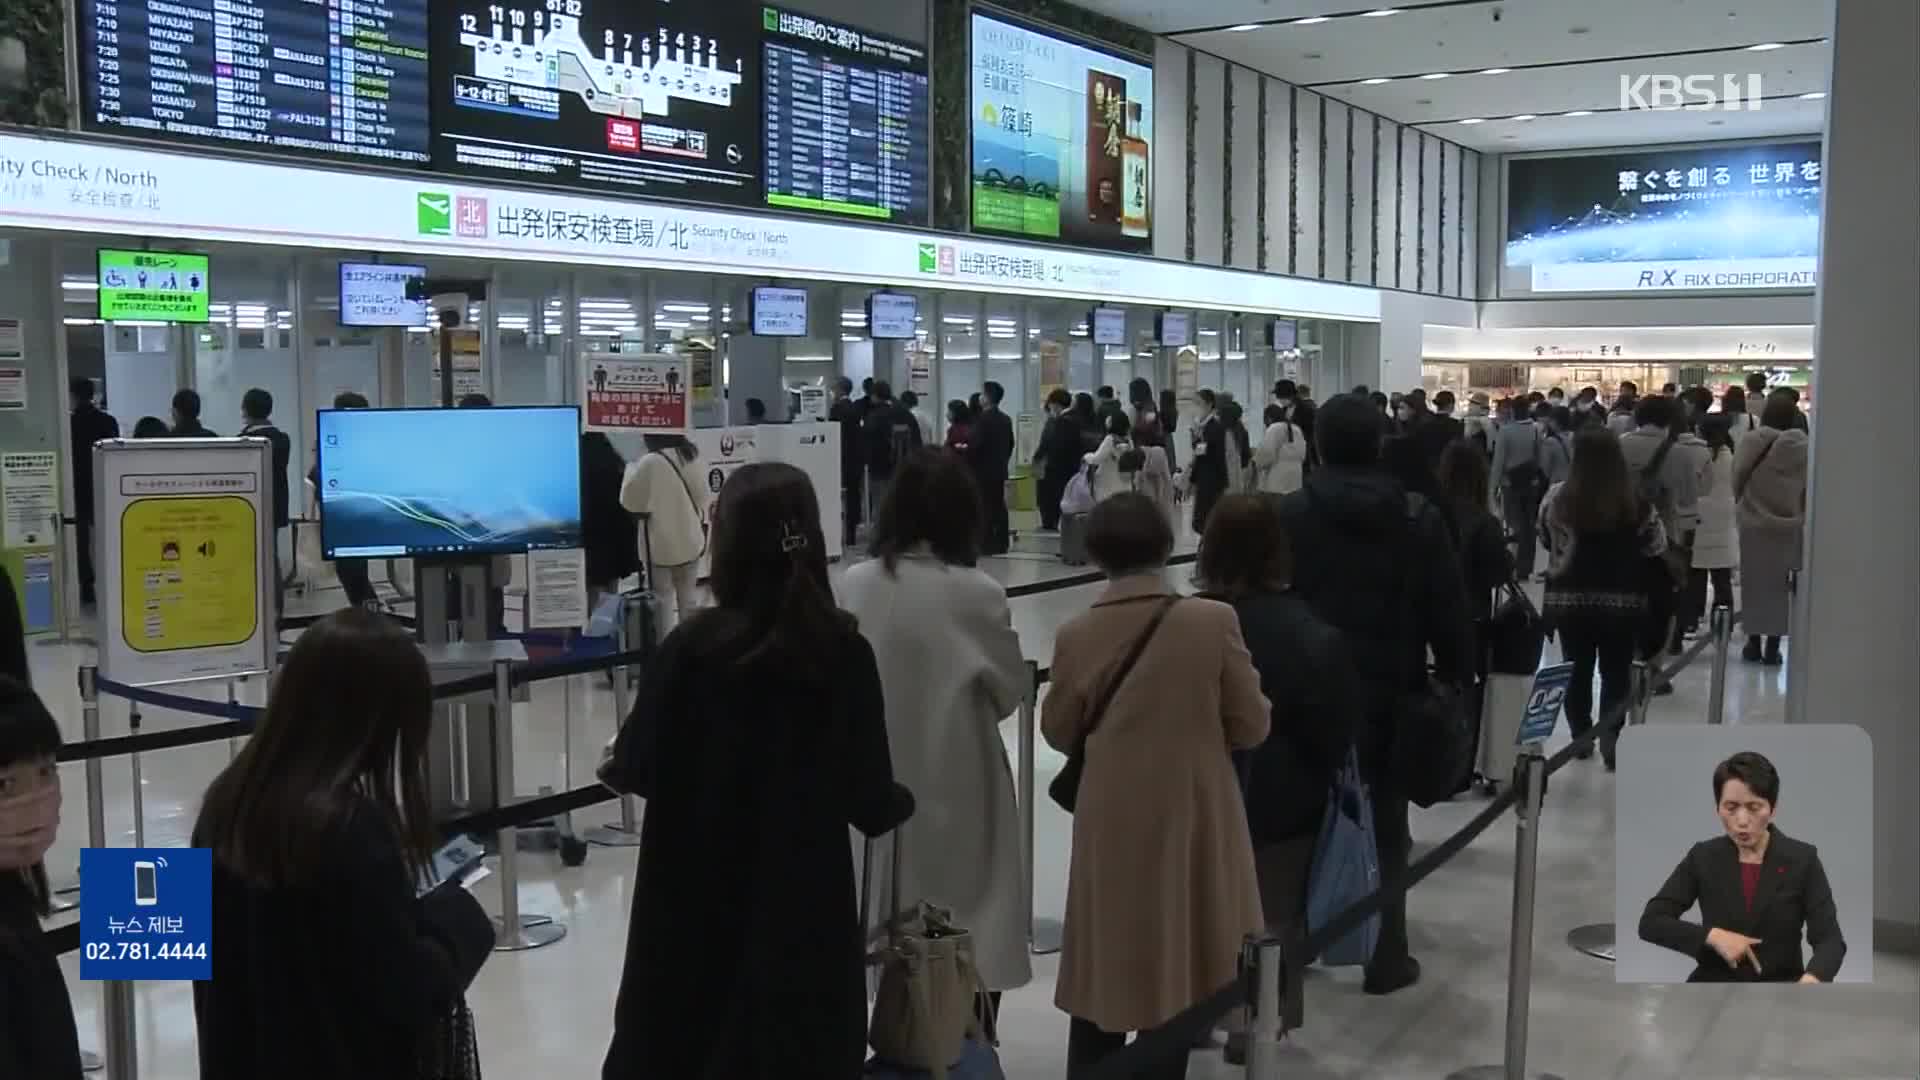 일본, 보안 검색 요원 부족으로 공항 혼잡